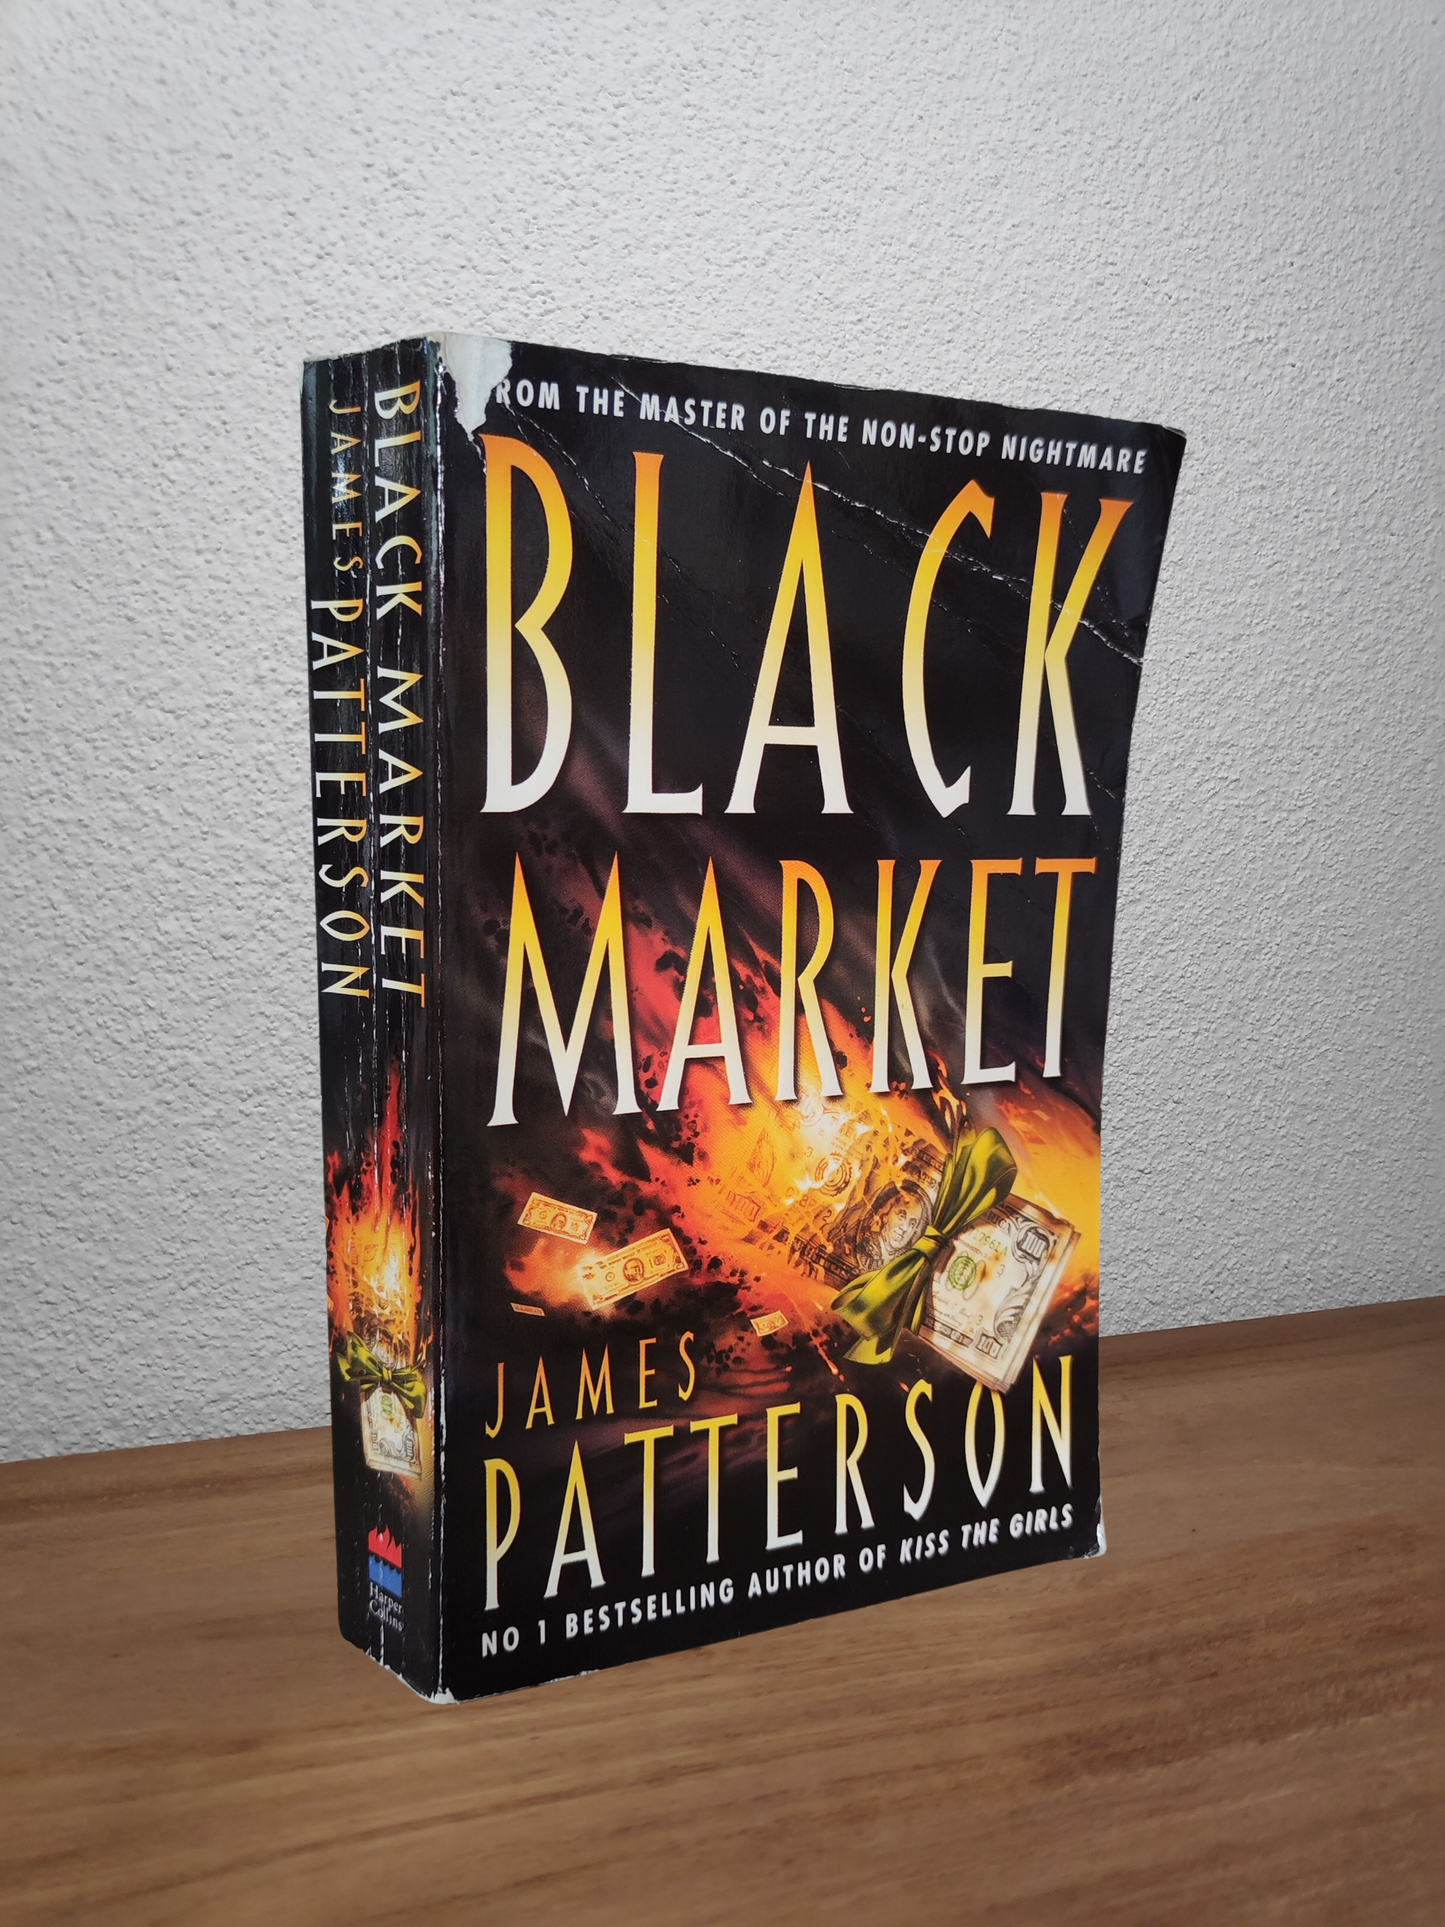 James Patterson - Black Market